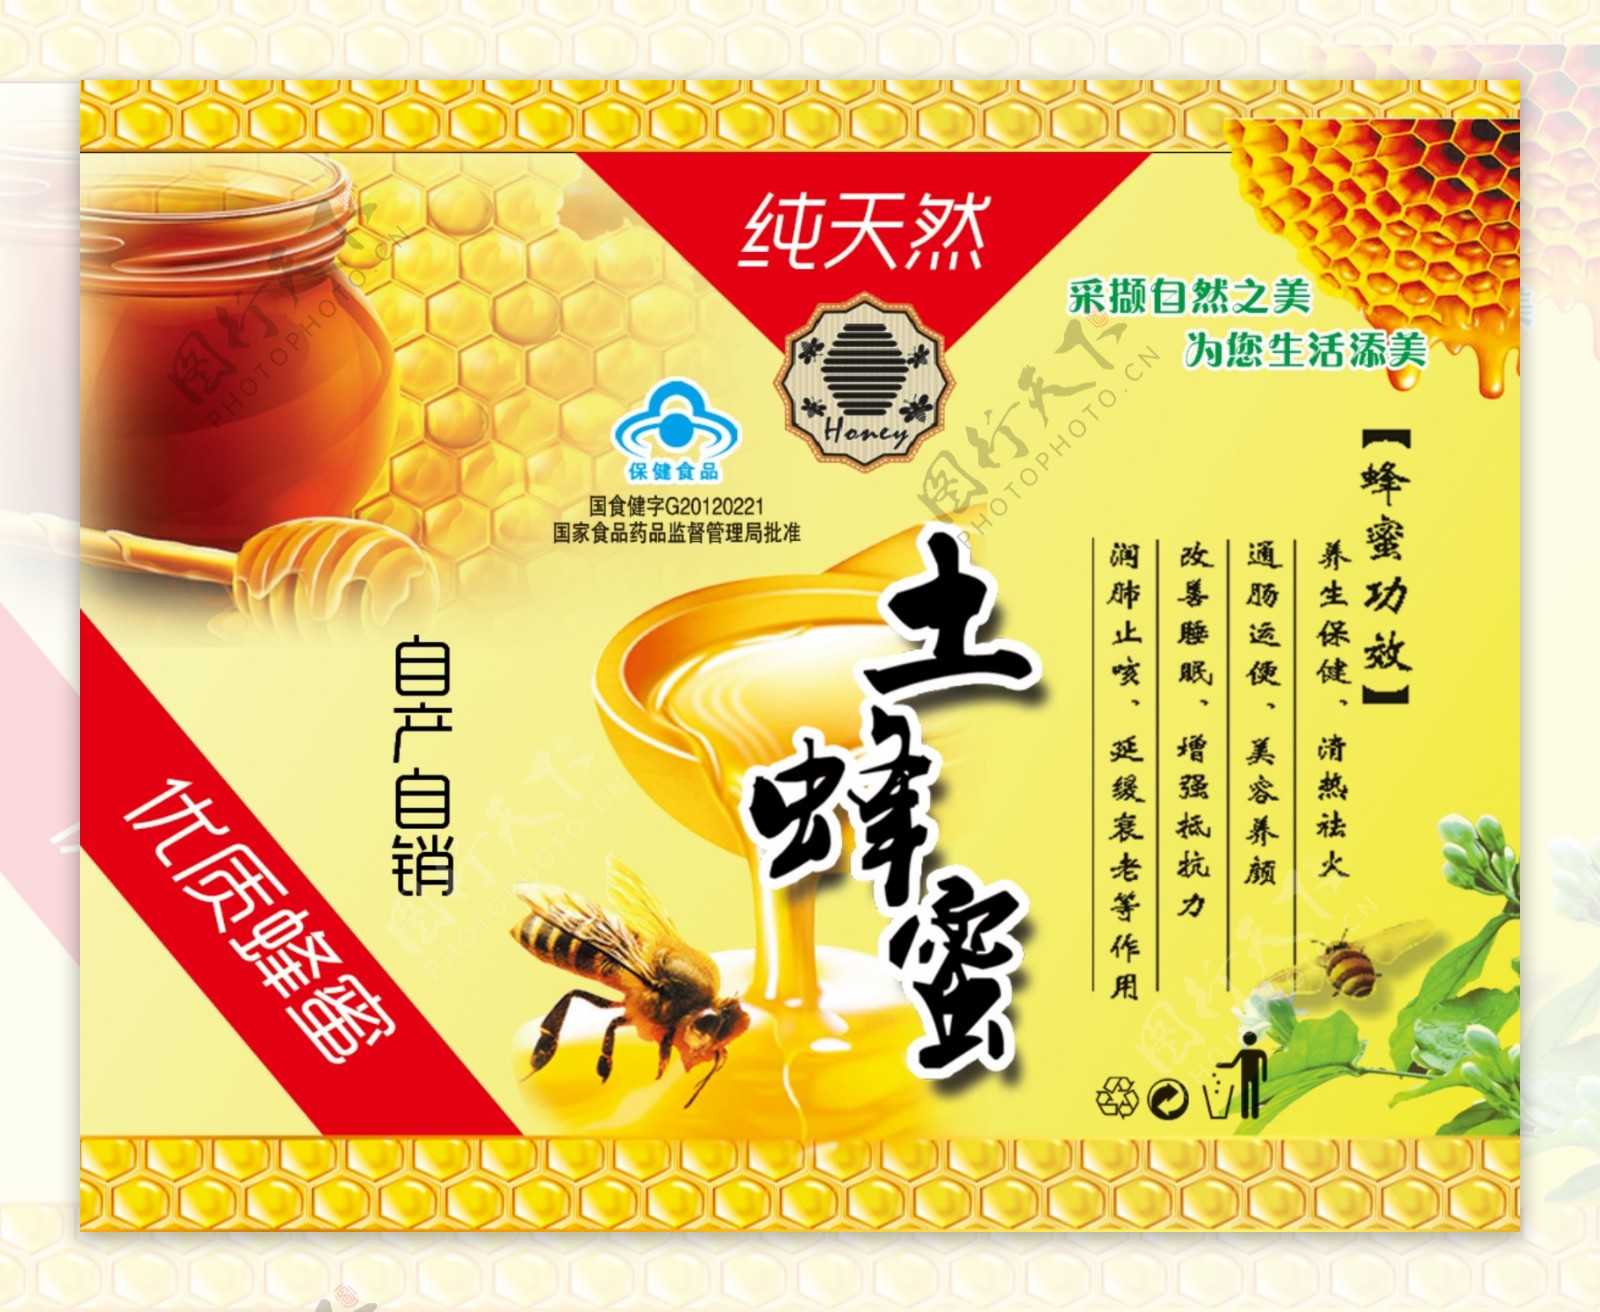 土蜂蜜包装标签